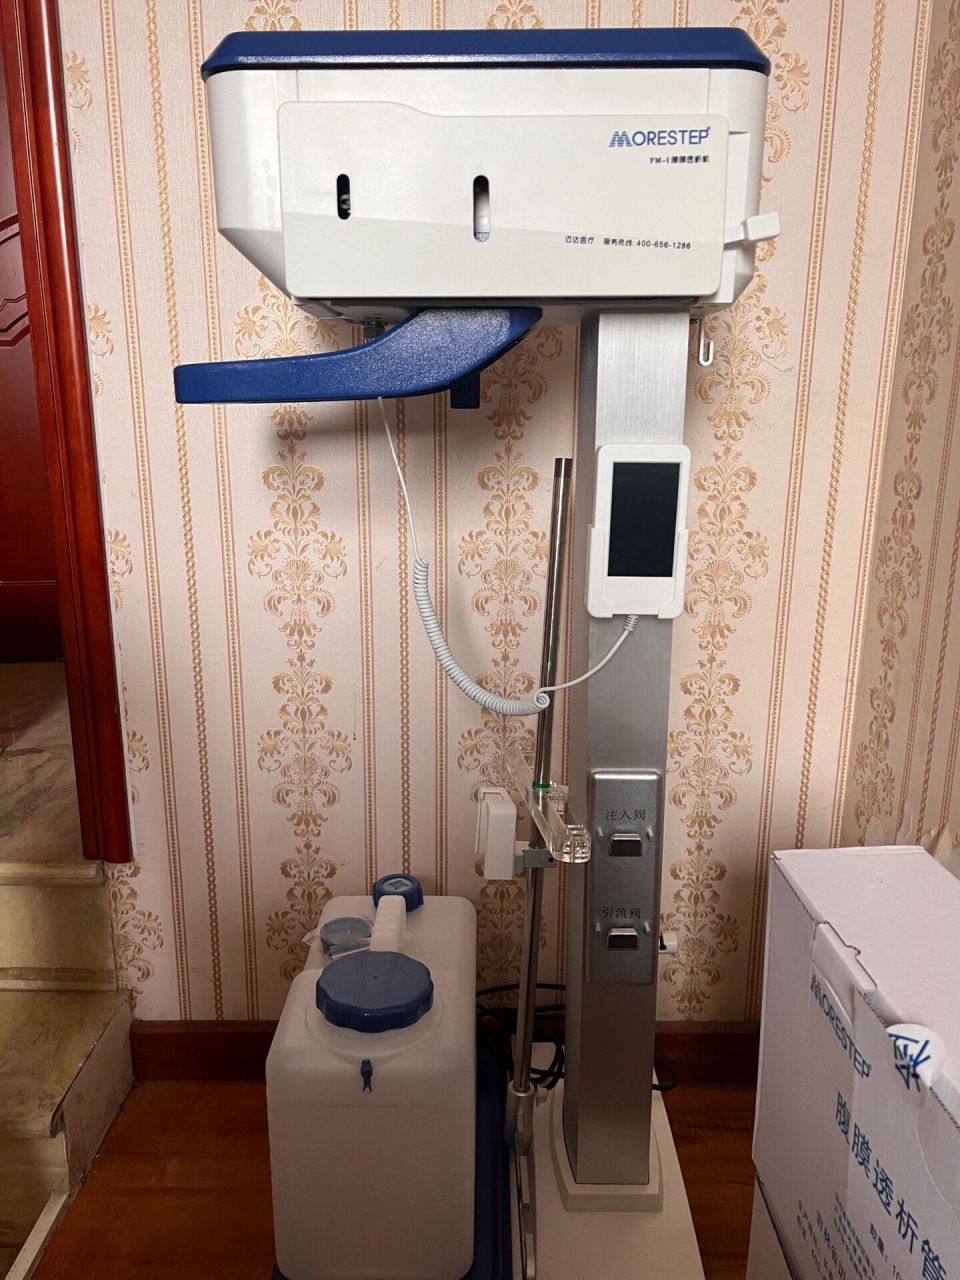 morestep迈达自动腹膜透析机,39000 买的,因为改为血液透析了,用不到